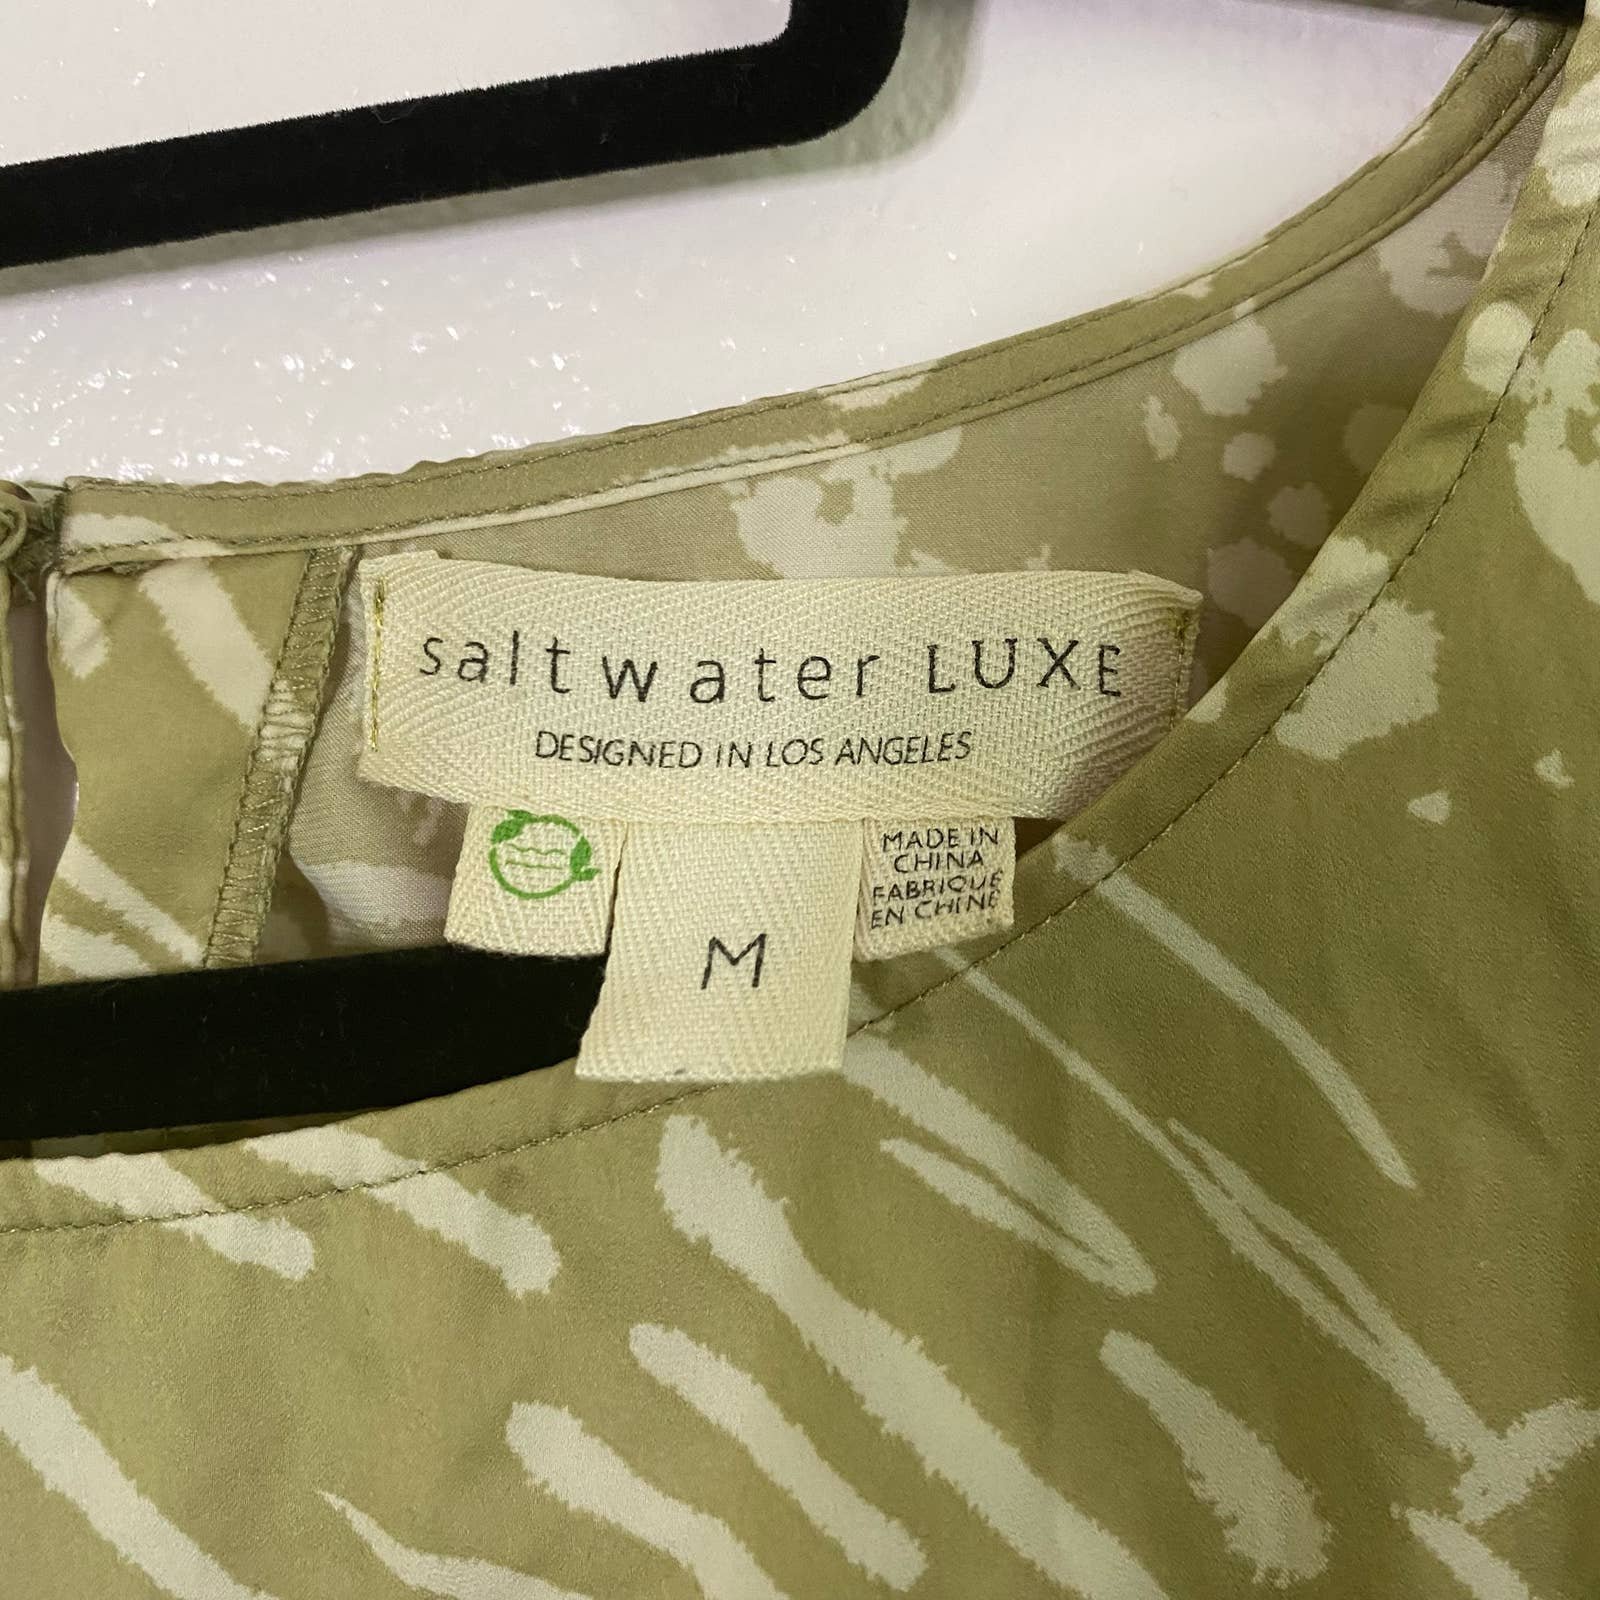 floor price Saltwater Luxe Green Top Shirt Women Size M NyvIt5CA5 online store